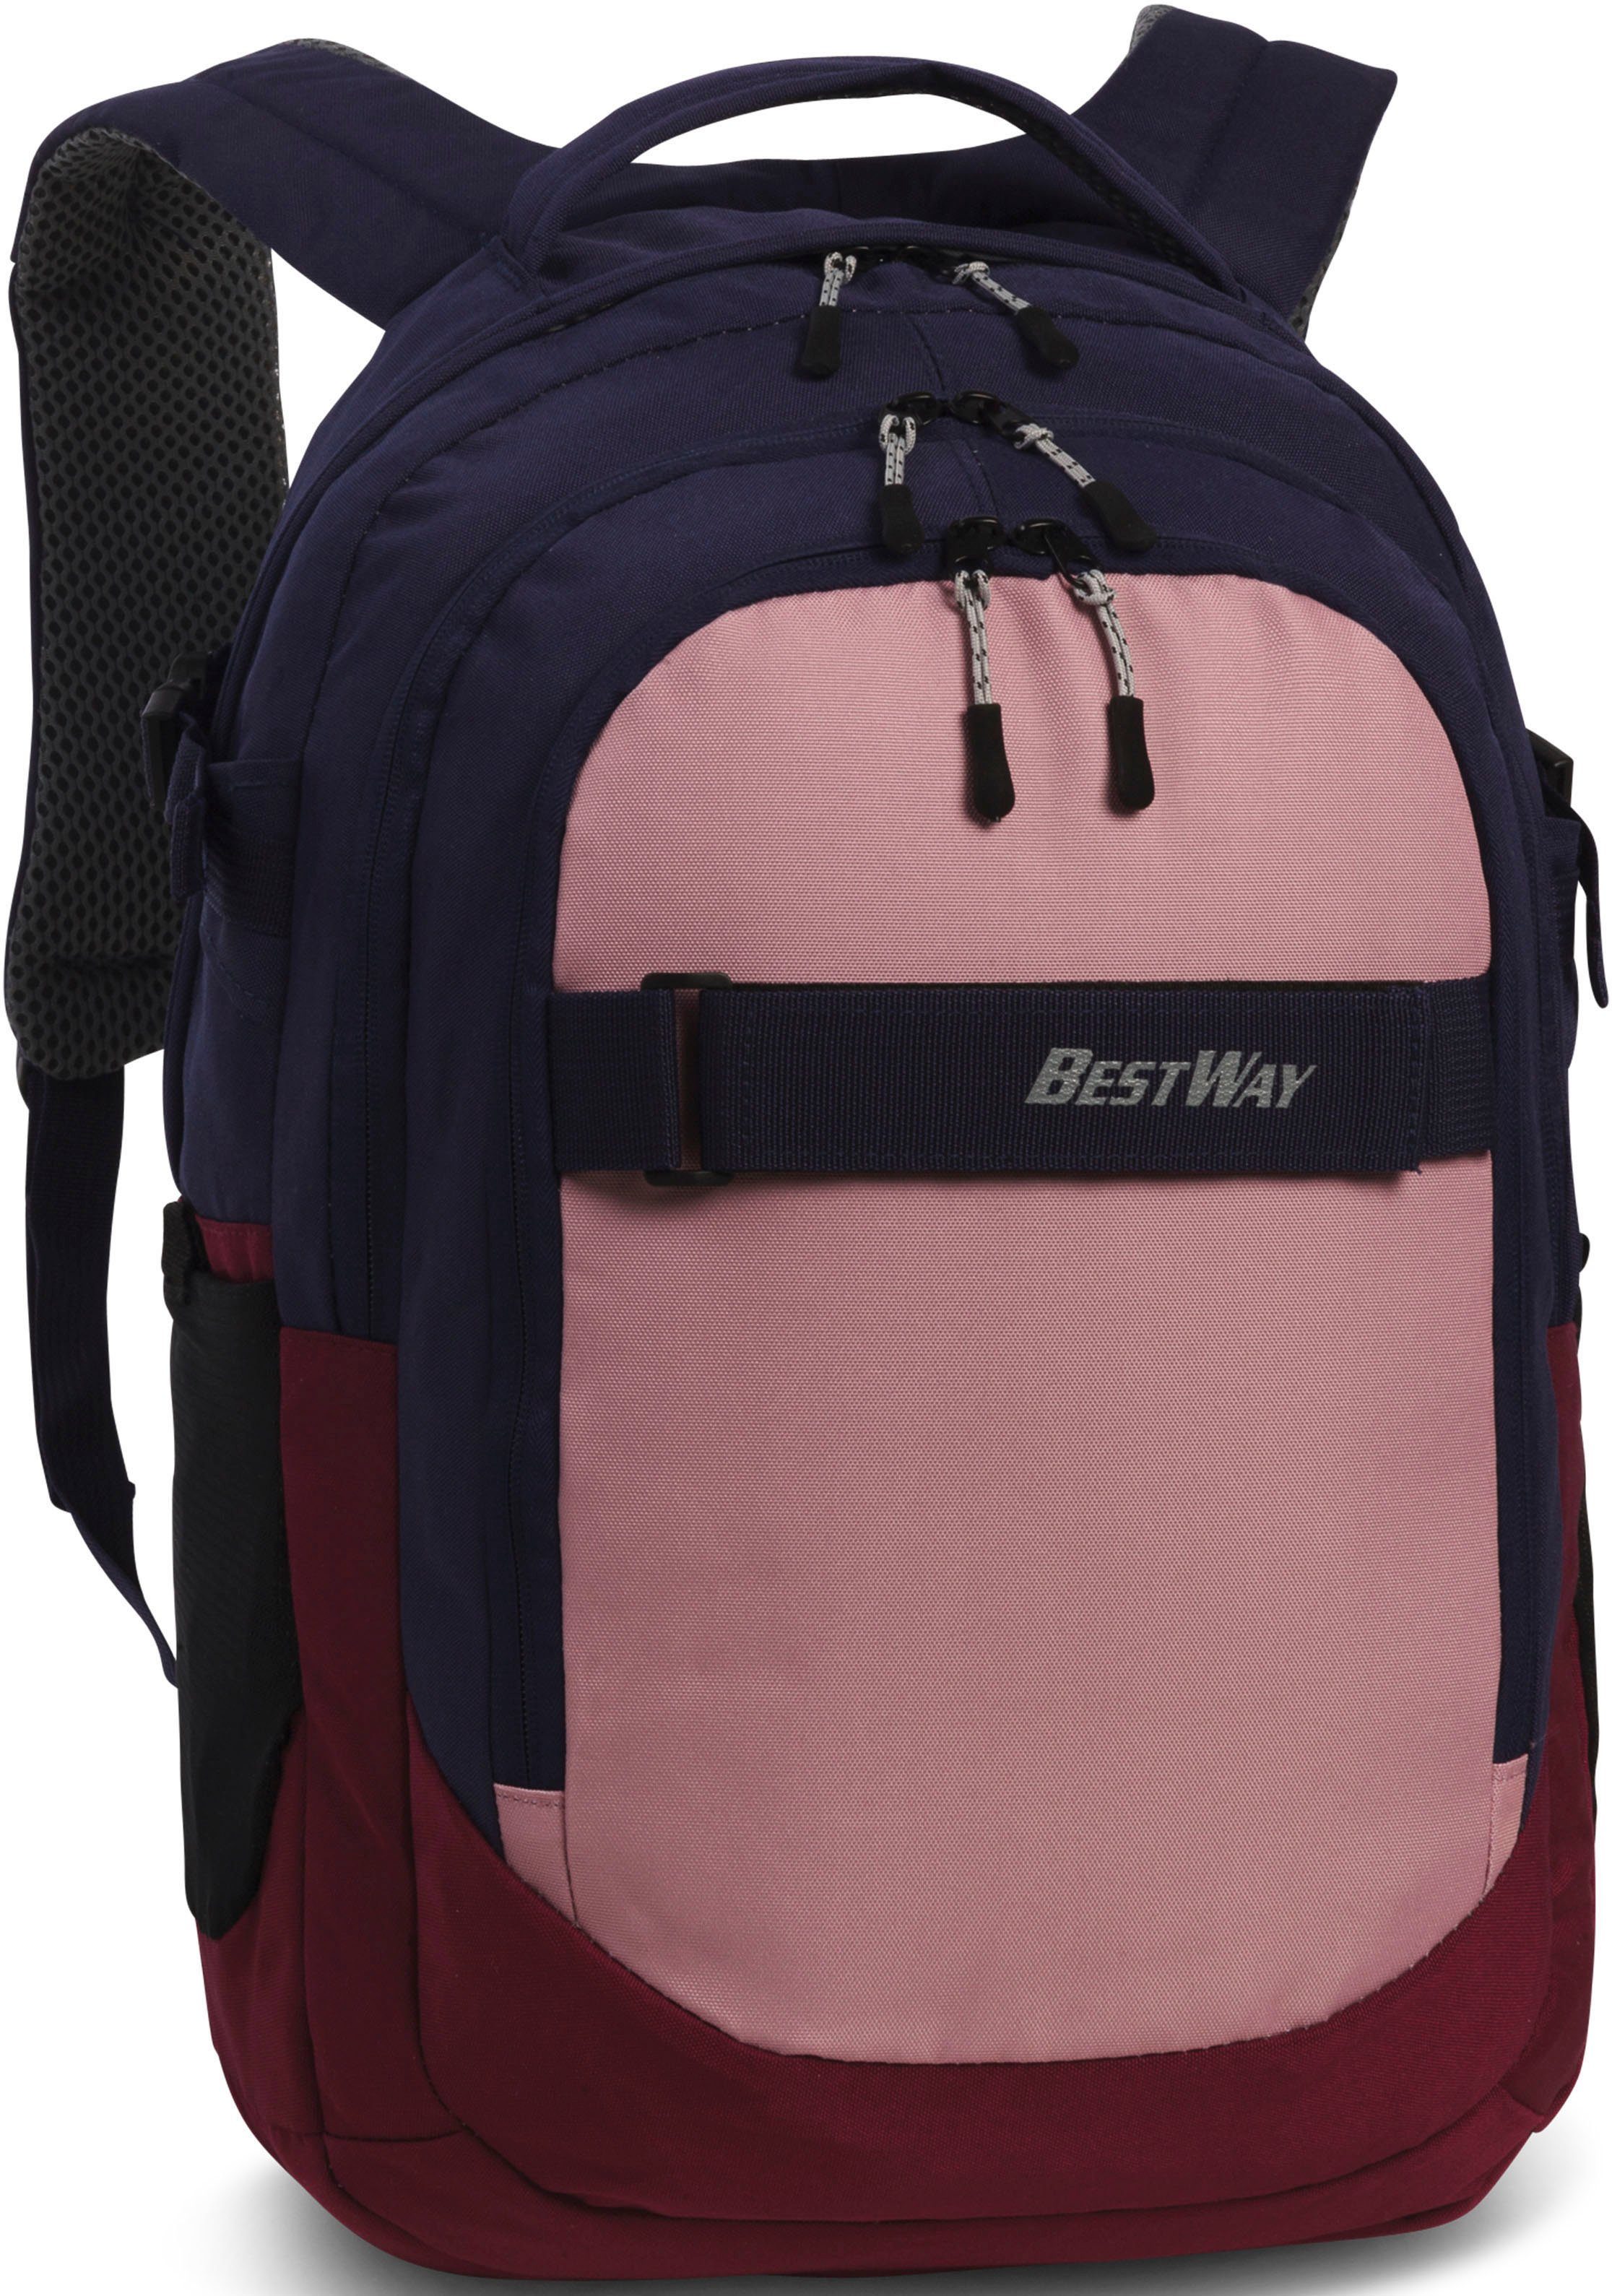 BESTWAY Schulrucksack Evolution Air, blau/rosa, verstellbare Bequeme, 15 mit Laptopfach, Zoll Schultergurte gepolstertem